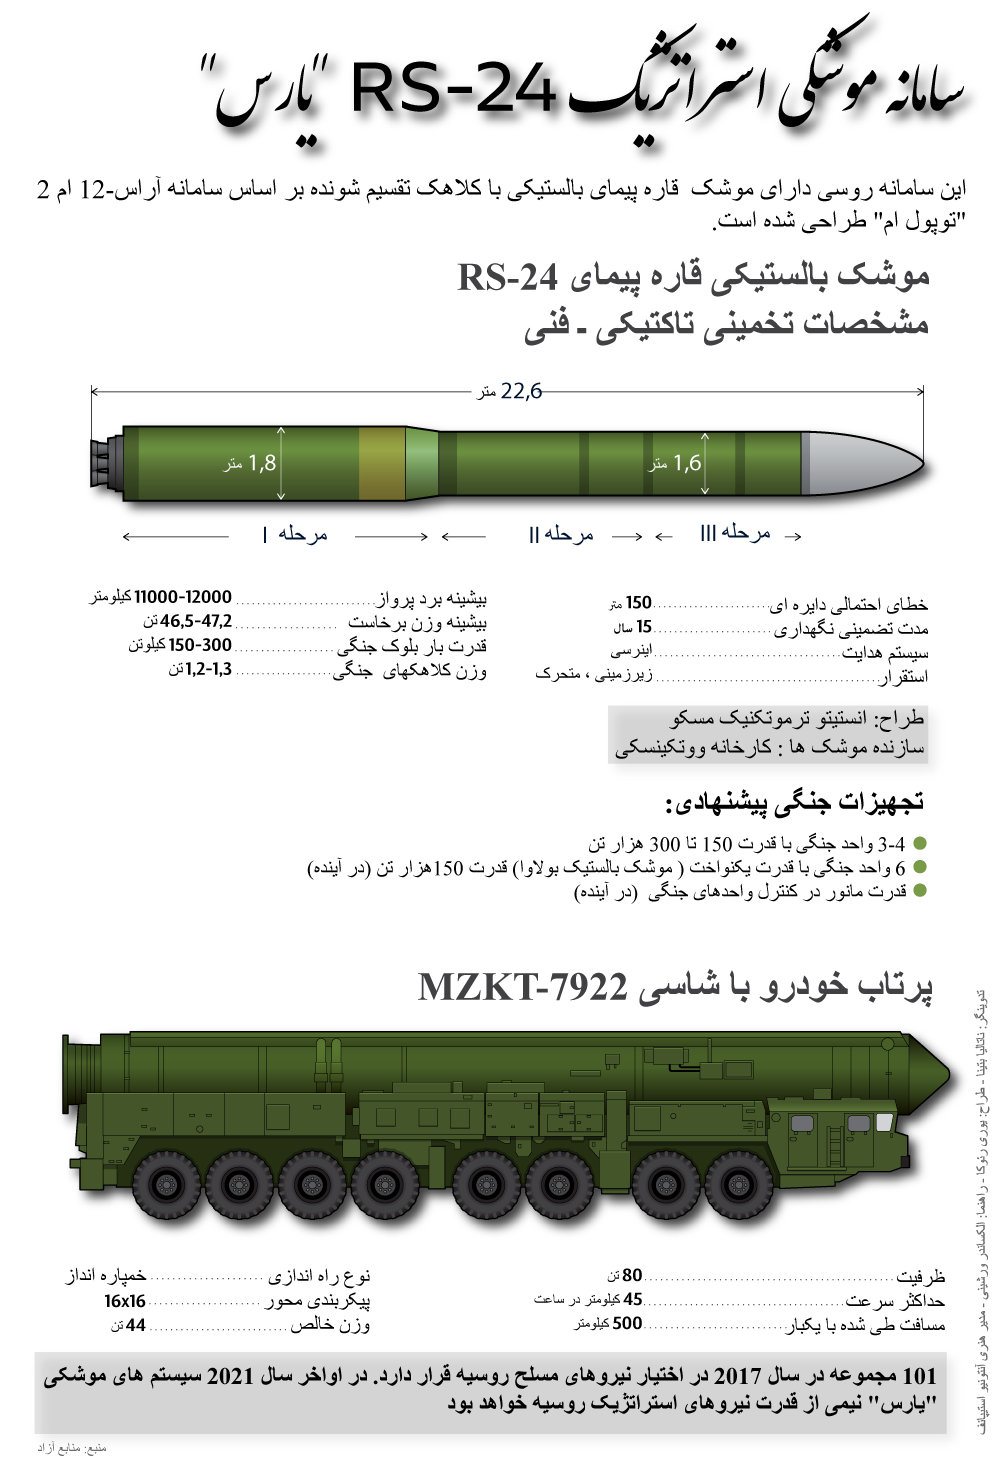 سامانه موشکی استرانژیک  آر اس 24  یارس - اسپوتنیک ایران  